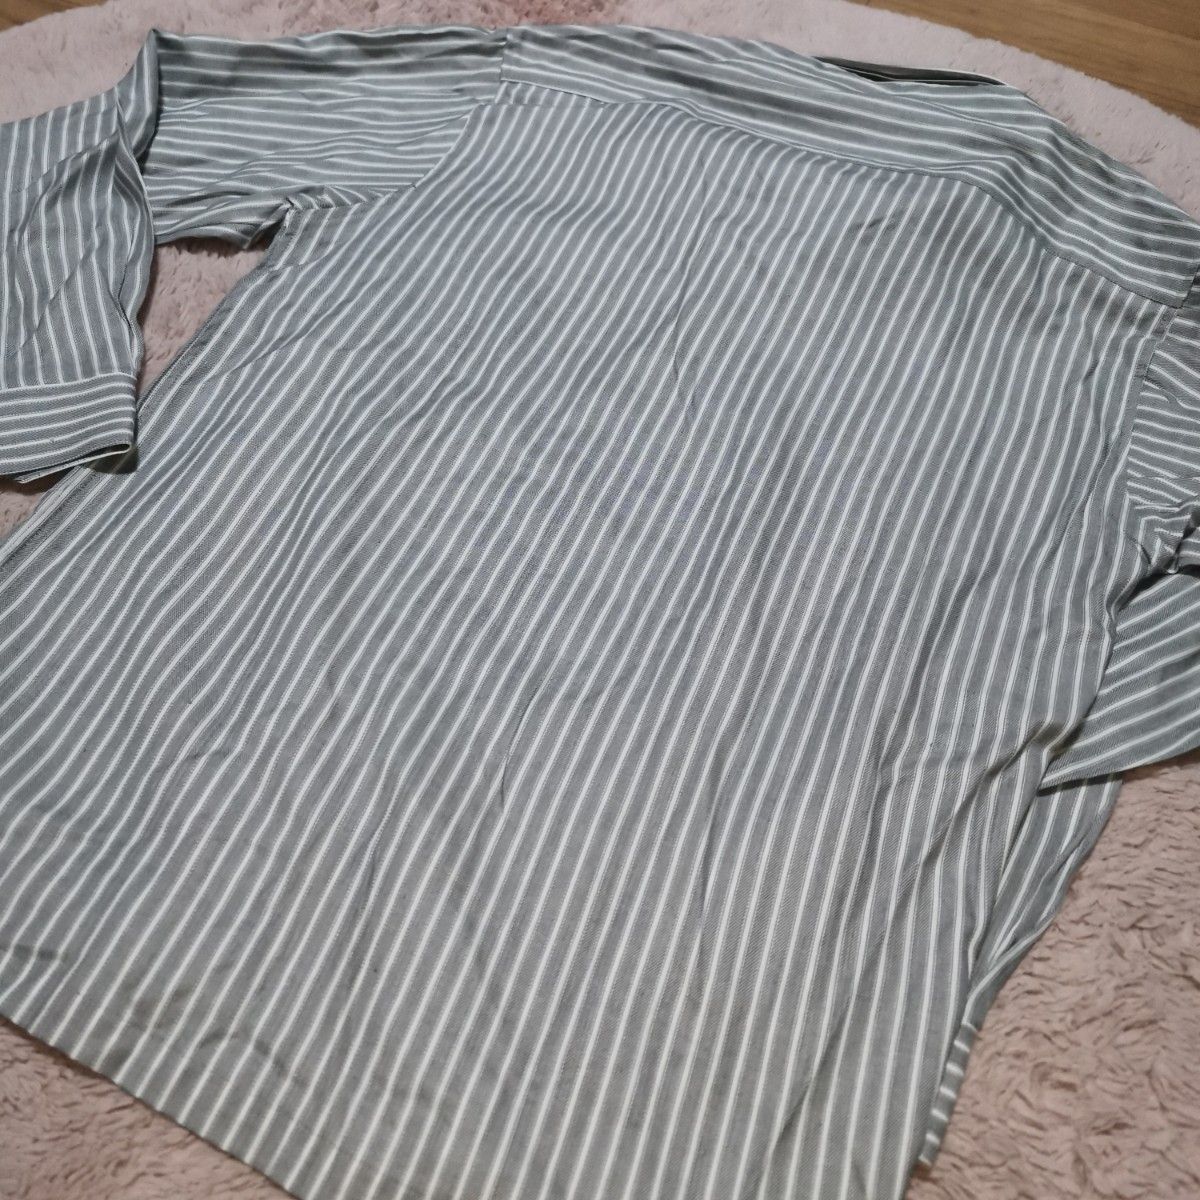 新品未使用 長袖シャツ カジュアル ストライプ ライトグレー 男性用 Mサイズ ワイシャツ ボタンダウン カジュアルシャツ